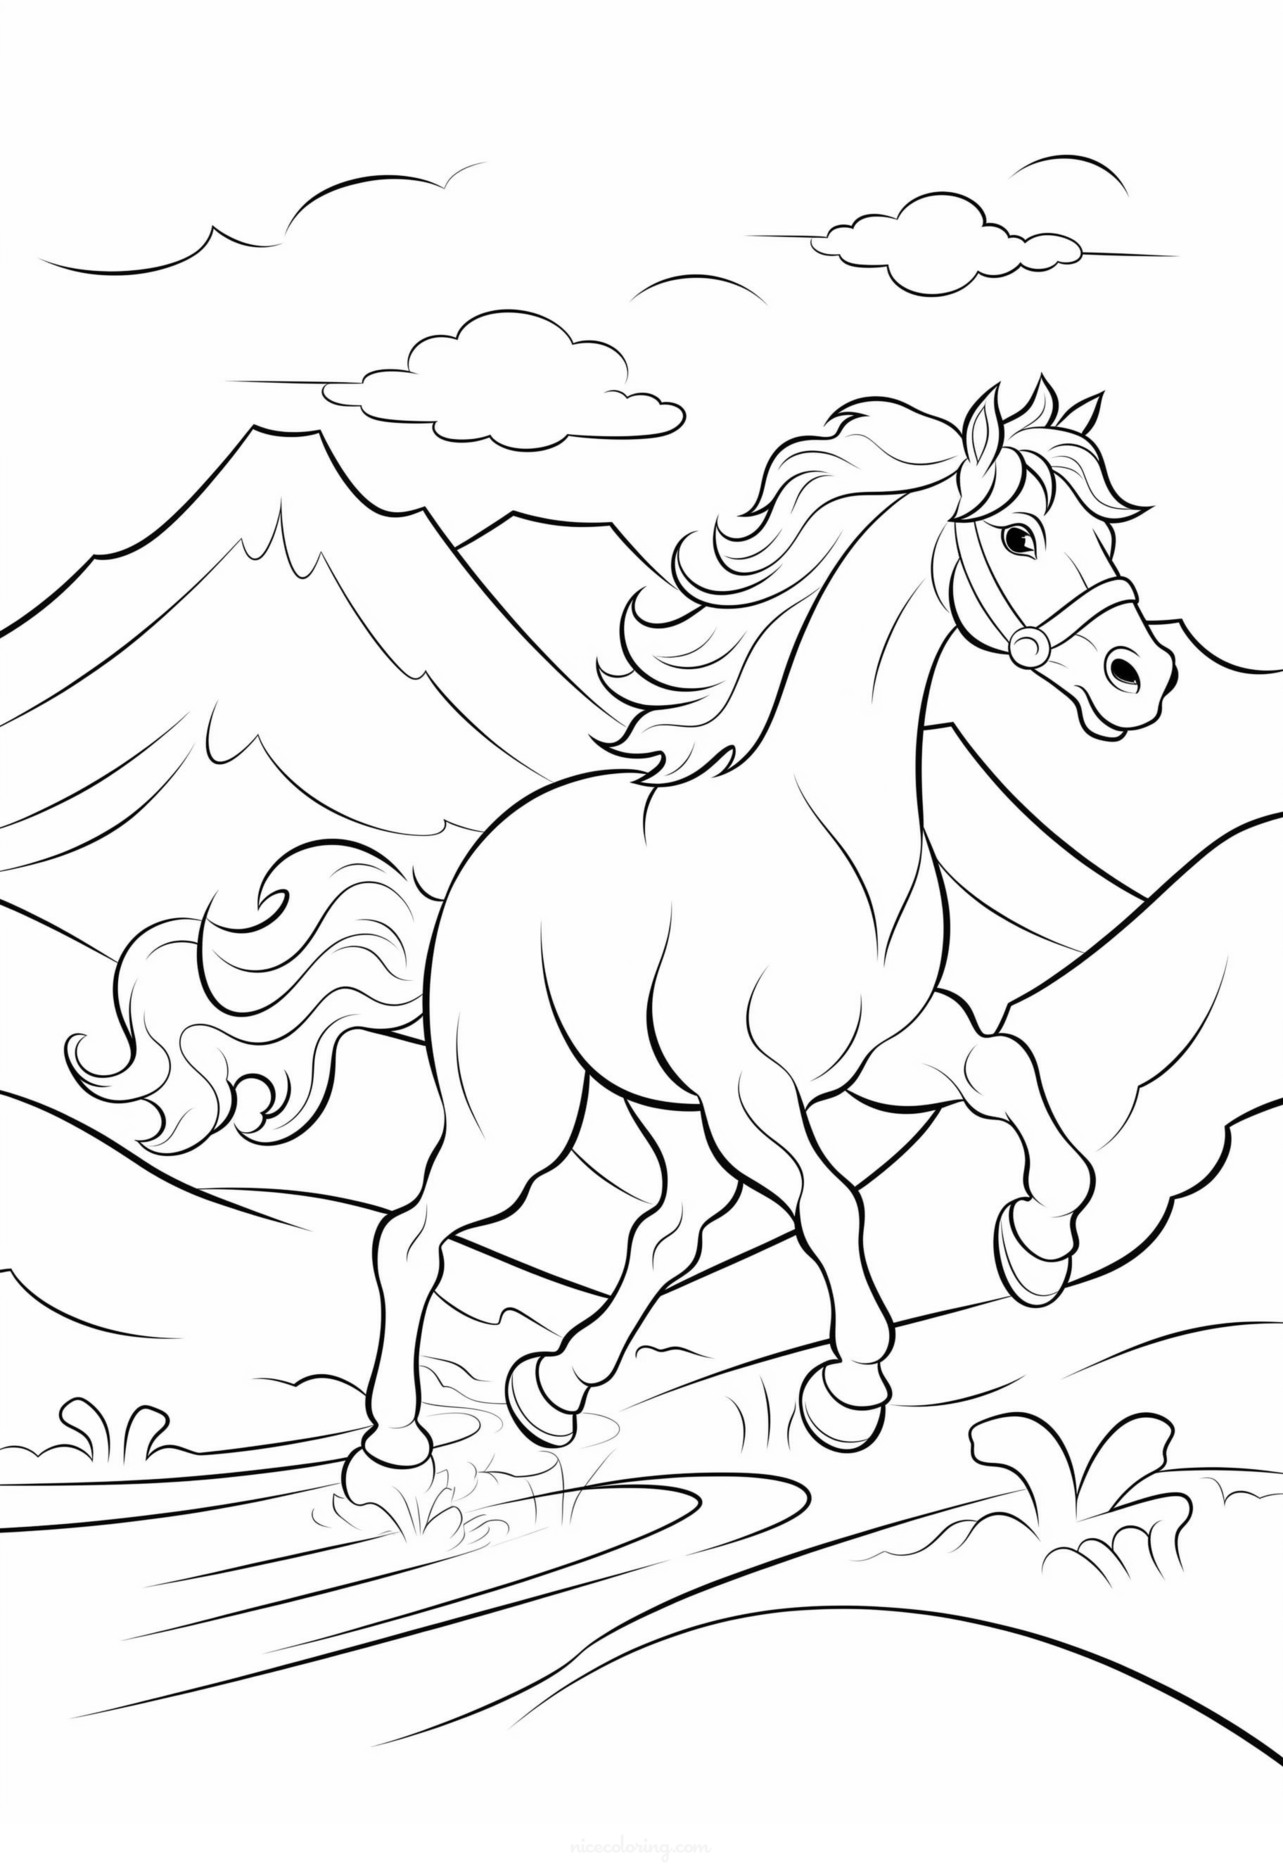 घोडा गवत चारतानाचे रंगवण्याचे छायाचित्र